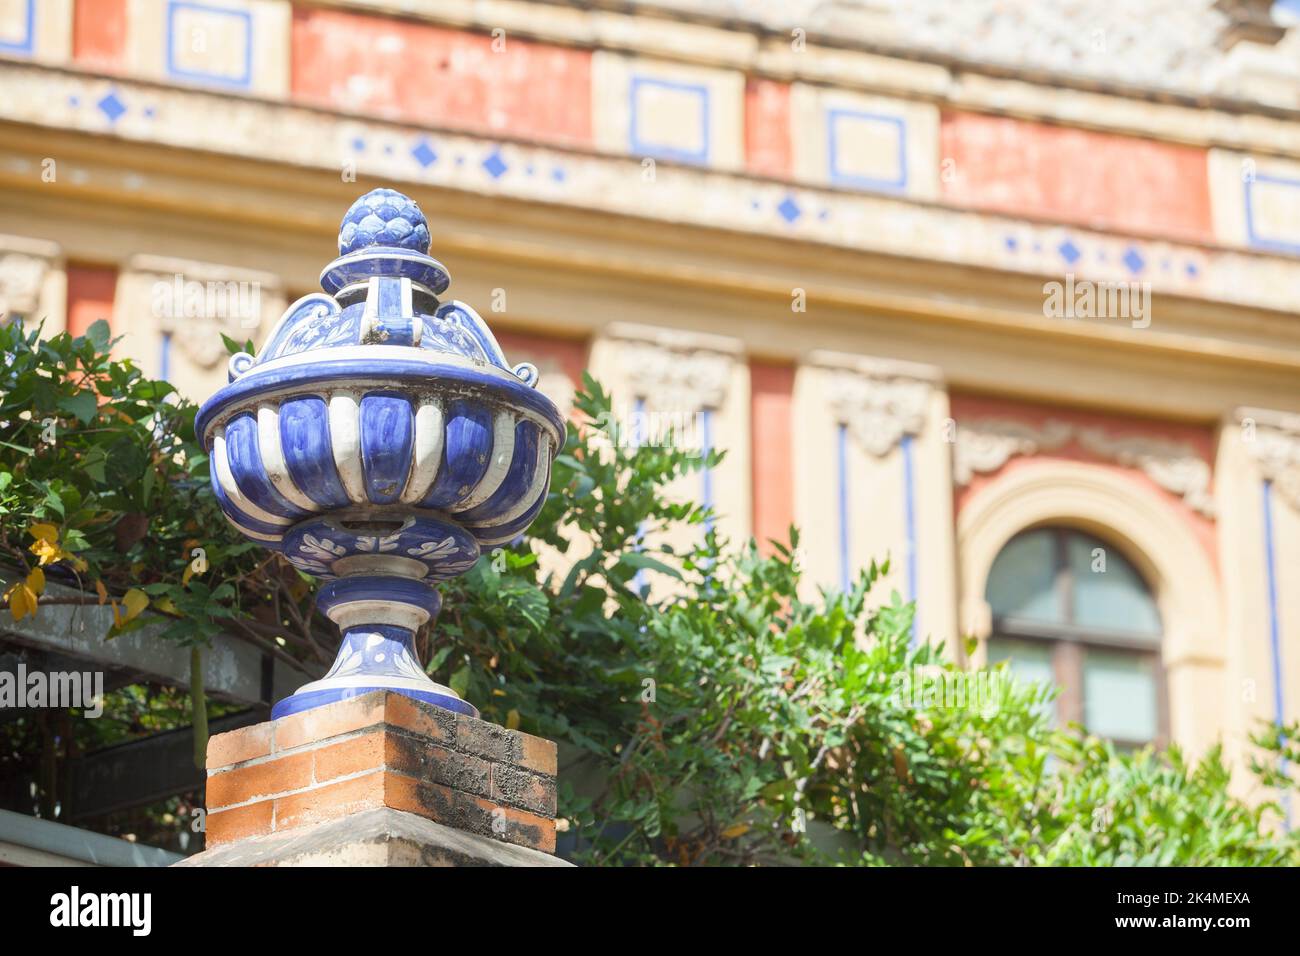 Vase haut en céramique coloré près du Palais de San Telmo, Séville, Andalousie, Espagne. Dessus de mur en brique. Banque D'Images